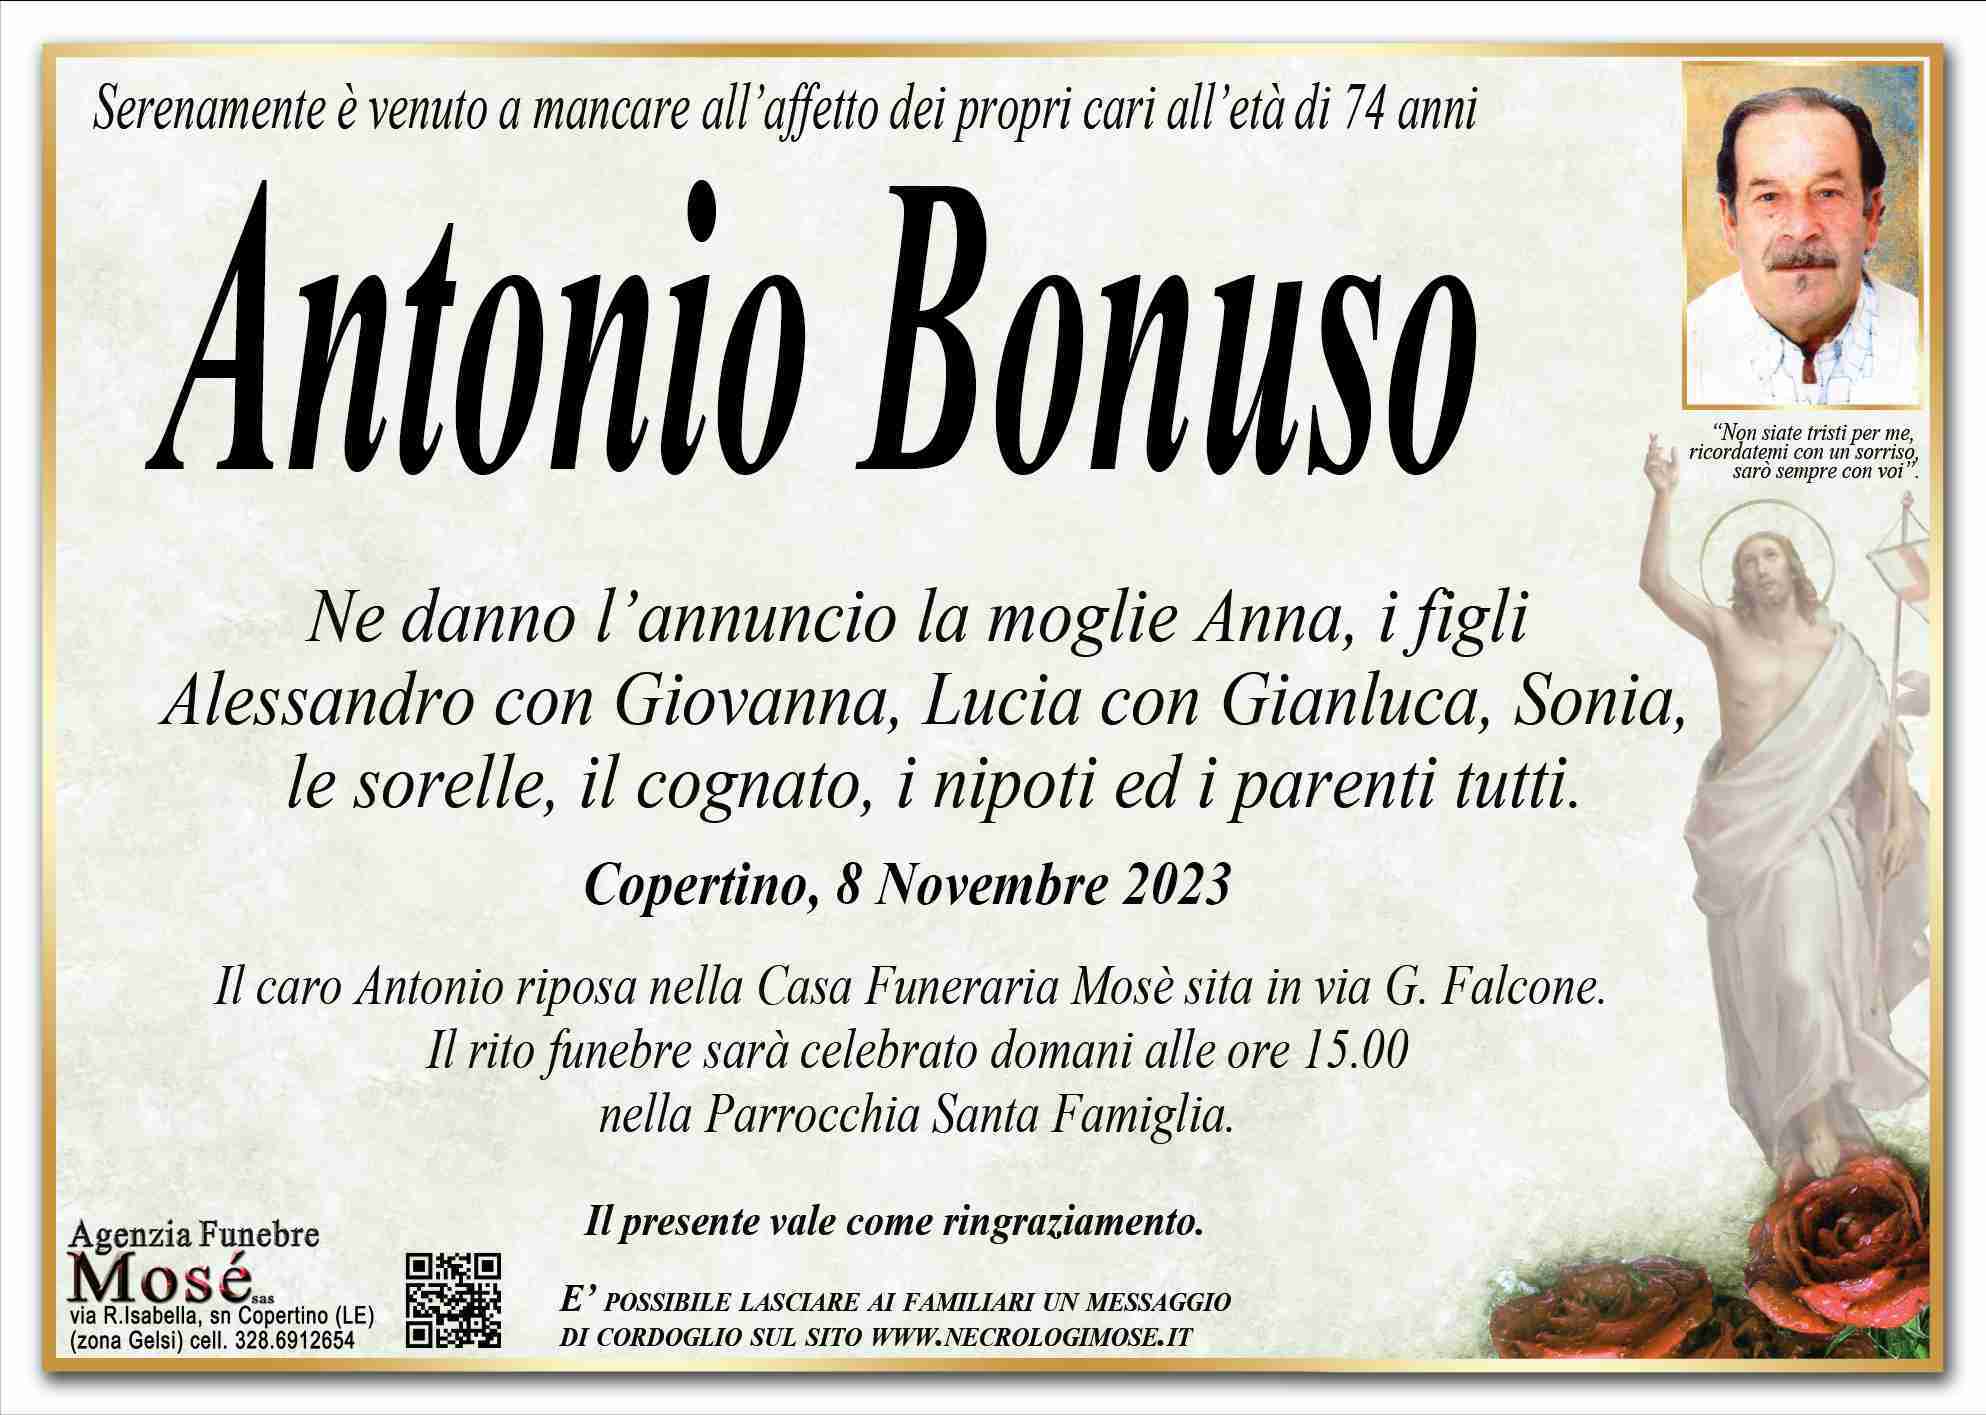 Antonio Bonuso